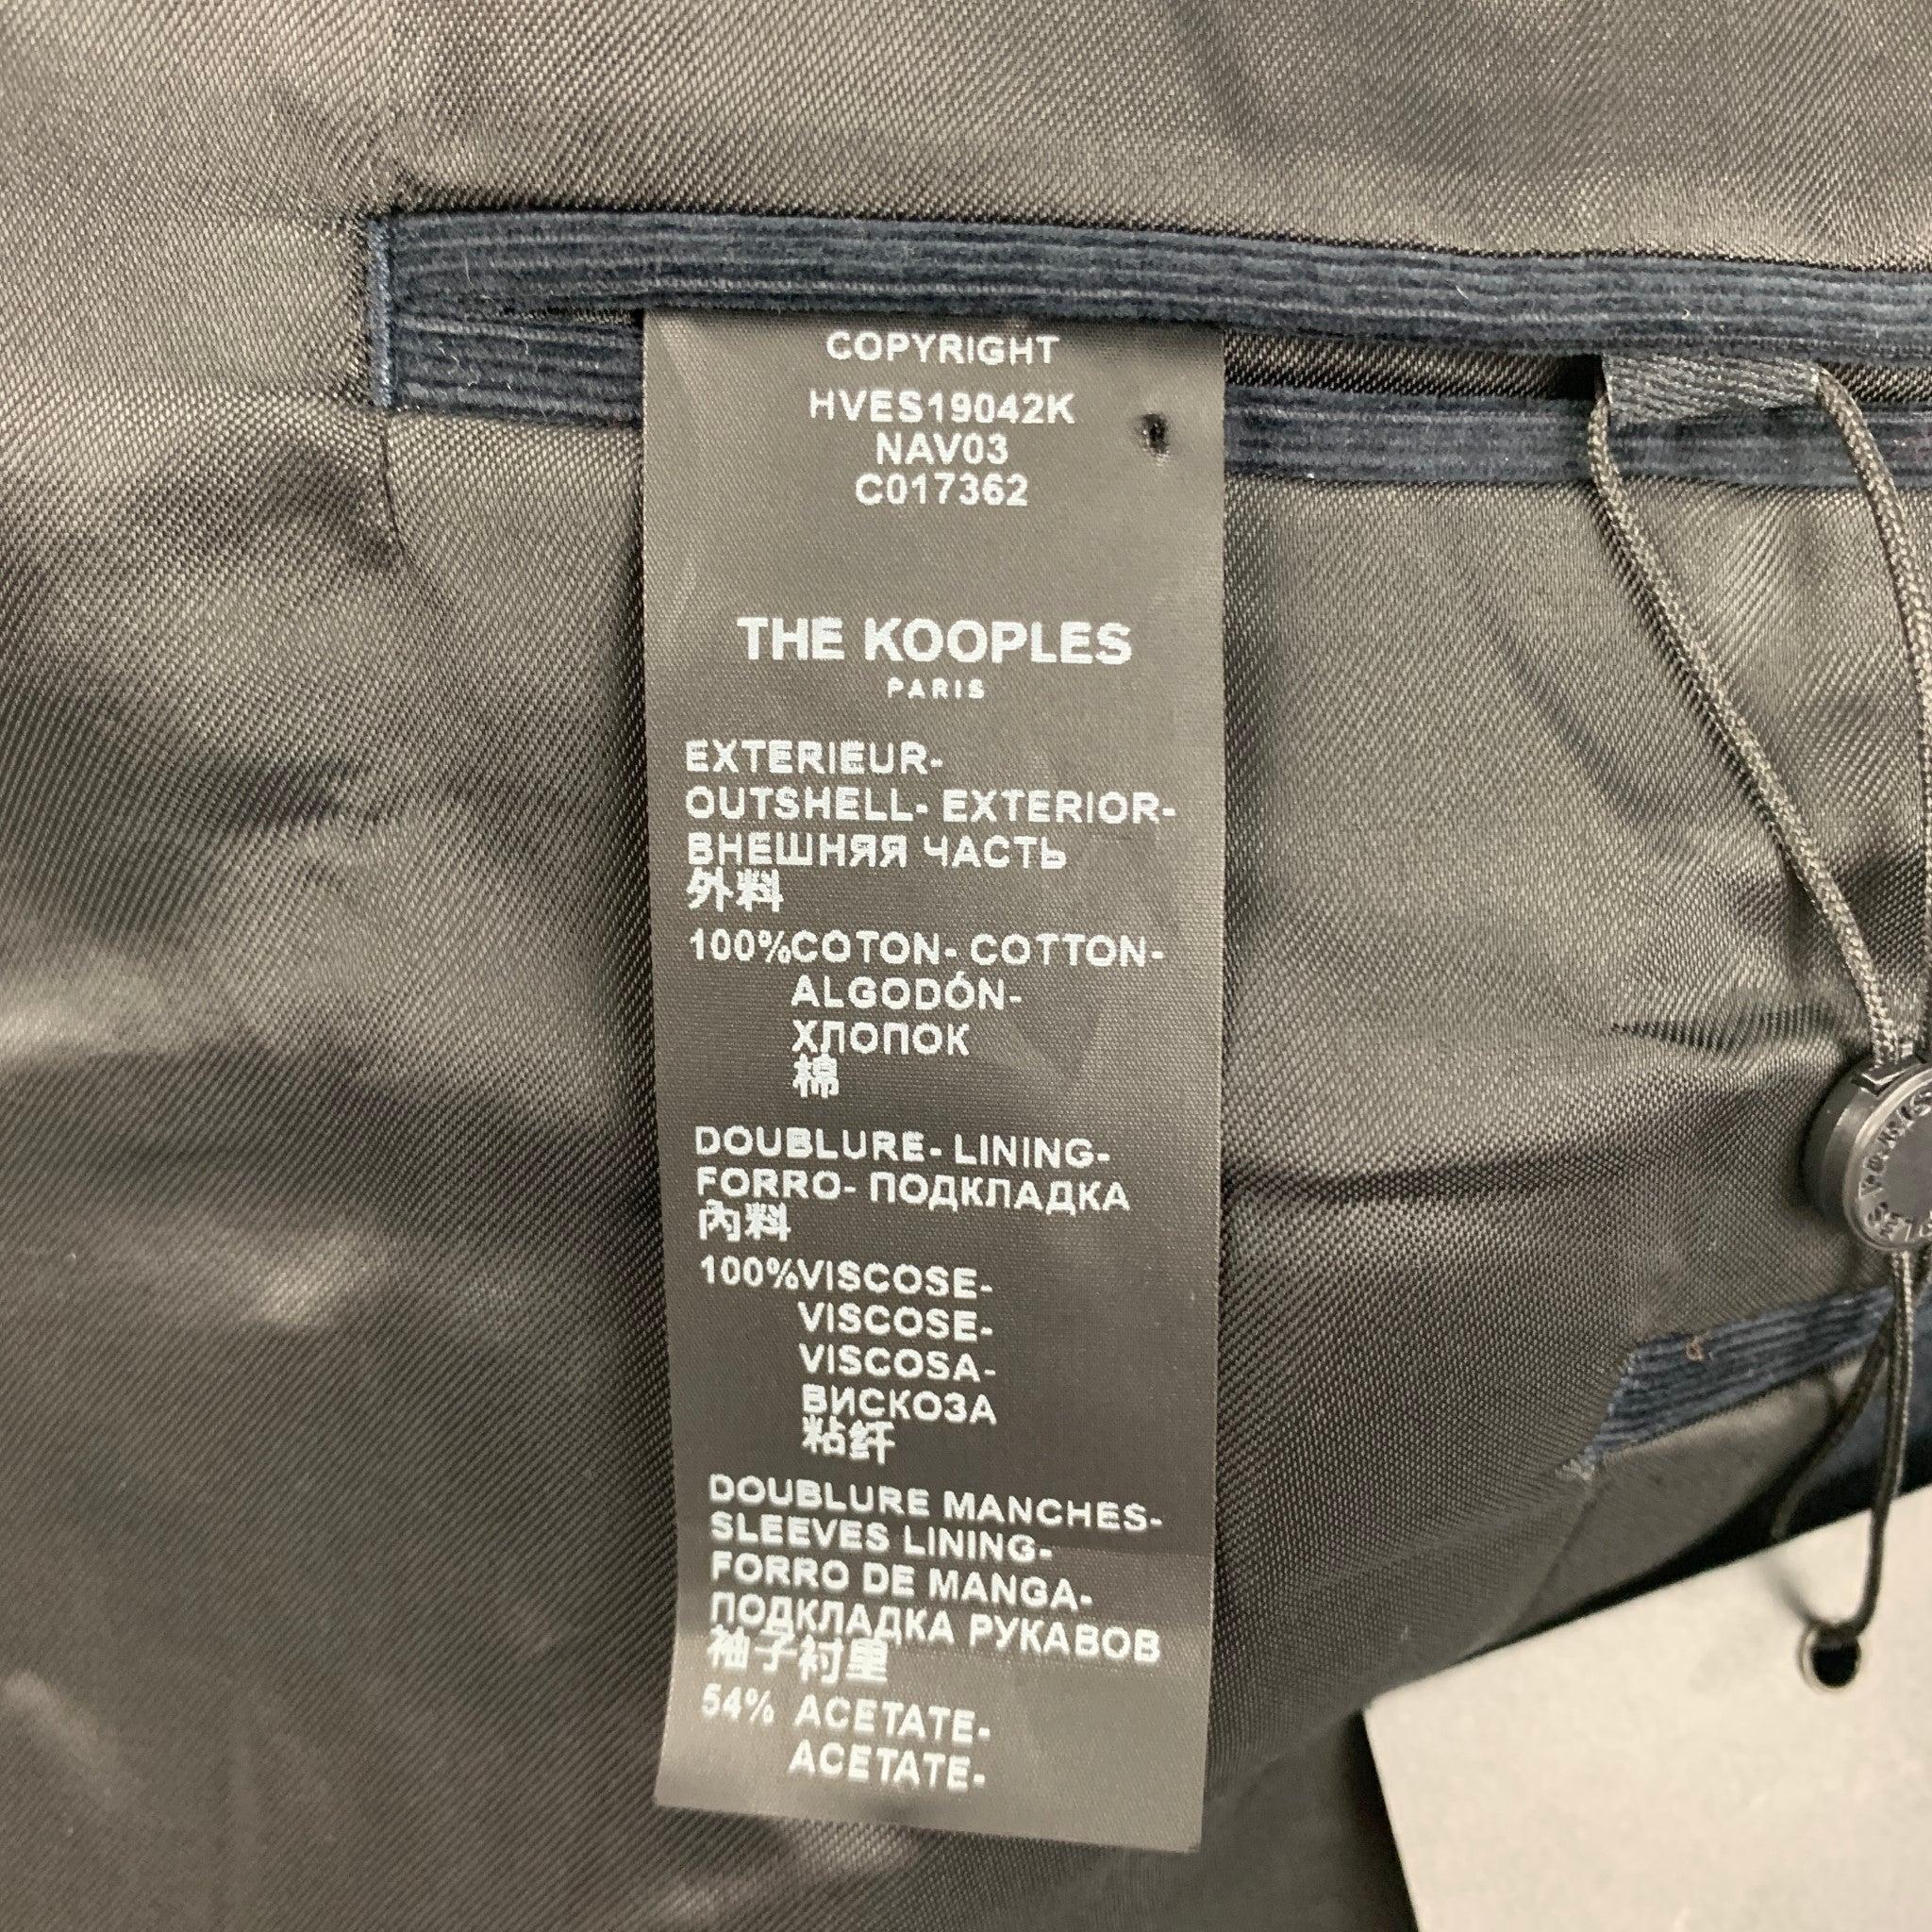 THE KOOPLES Size 42 Black Corduroy Cotton Notch Lapel Suit For Sale 3